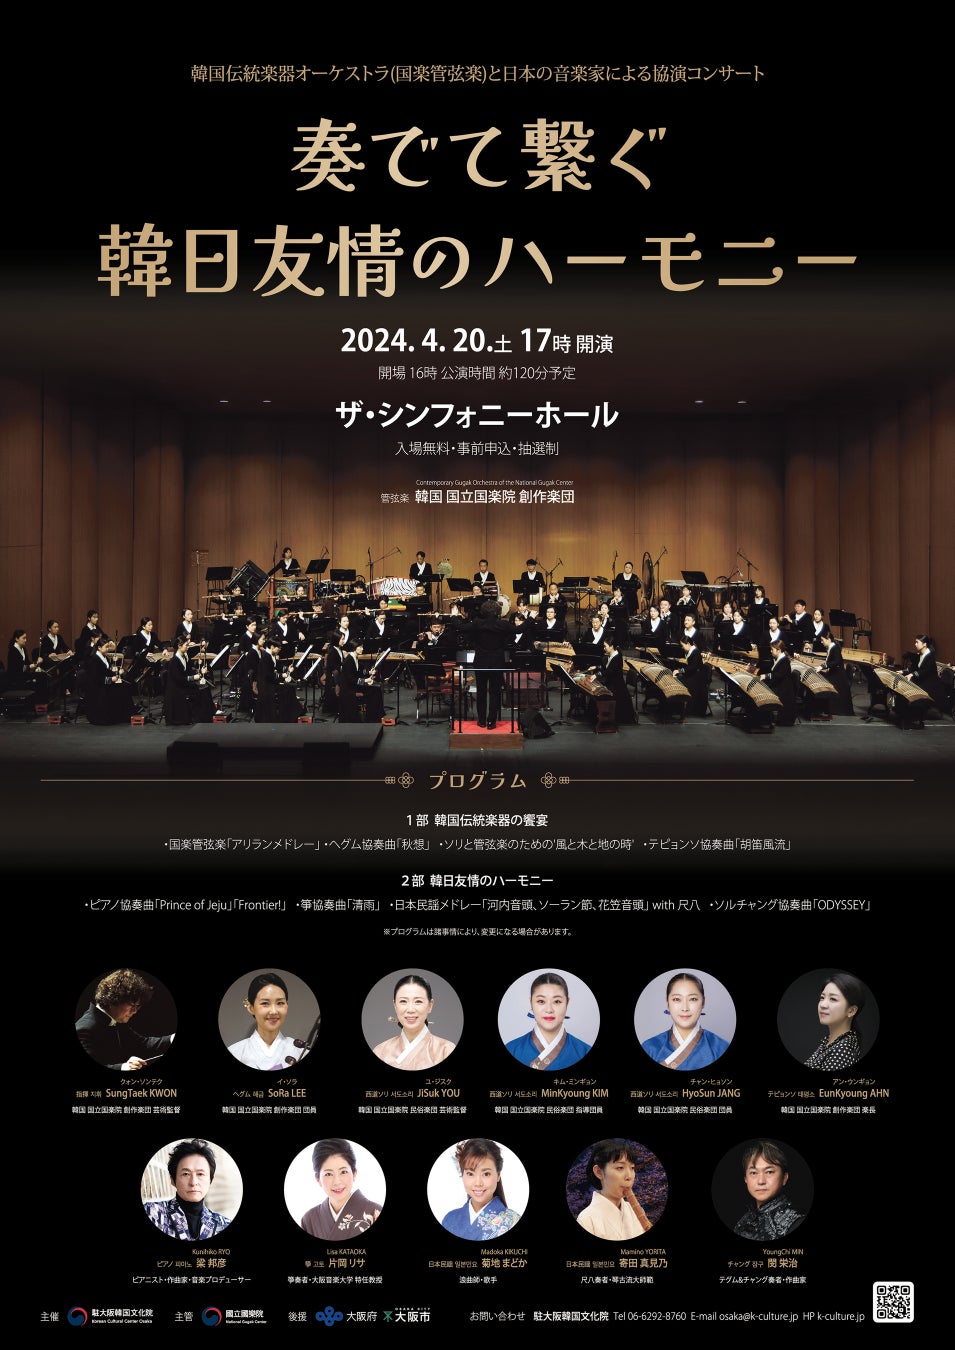 韓国伝統楽器オーケストラと日本の音楽家による協演コンサート「奏でて繋ぐ韓日友情のハーモニー」(4/20)大阪で開催